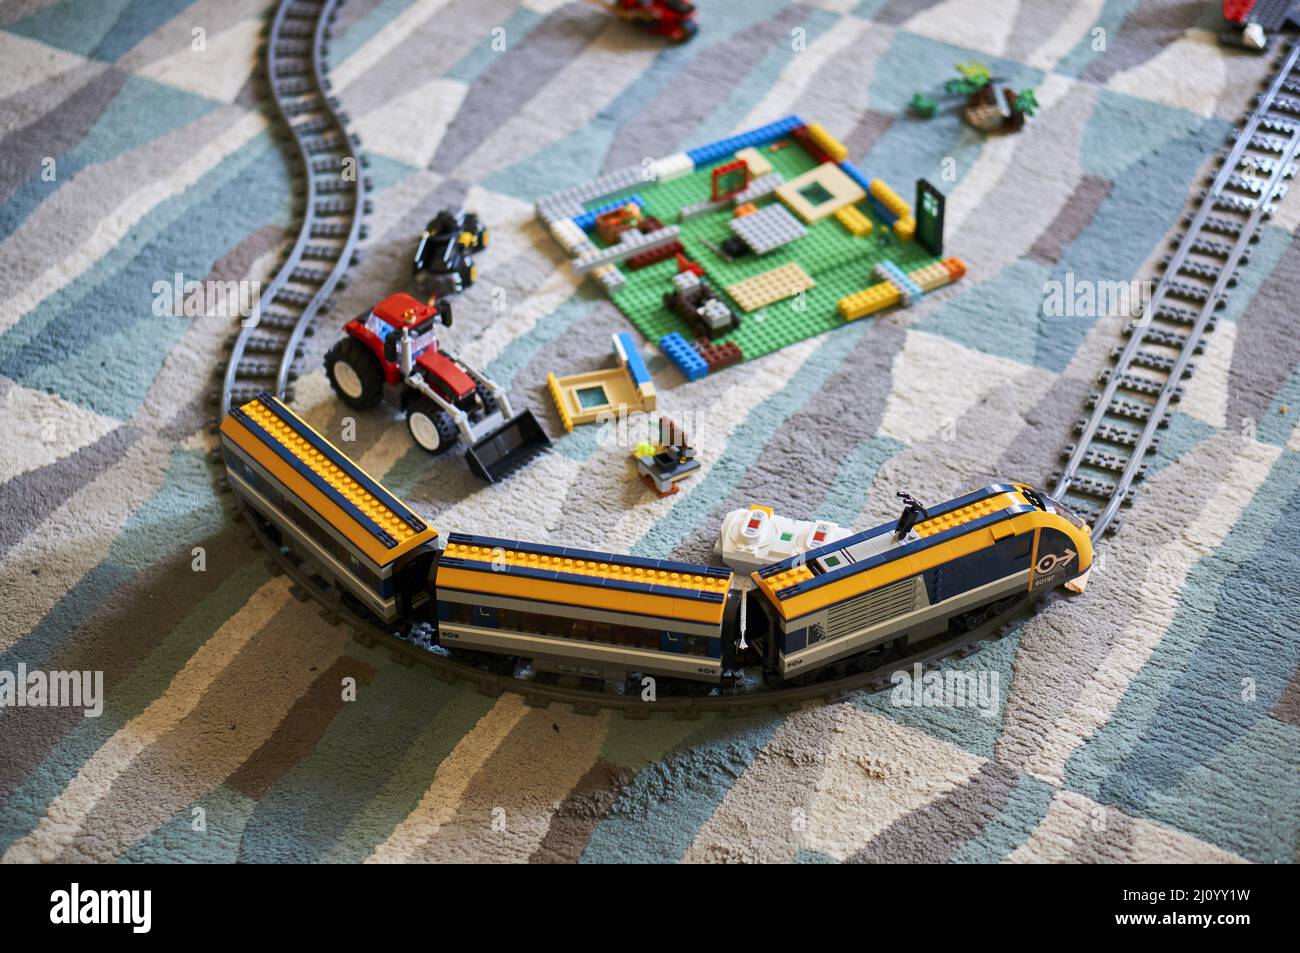 Gros plan d'un train électrique jouet de marque Lego avec des pistes sur un  sol recouvert de moquette Photo Stock - Alamy